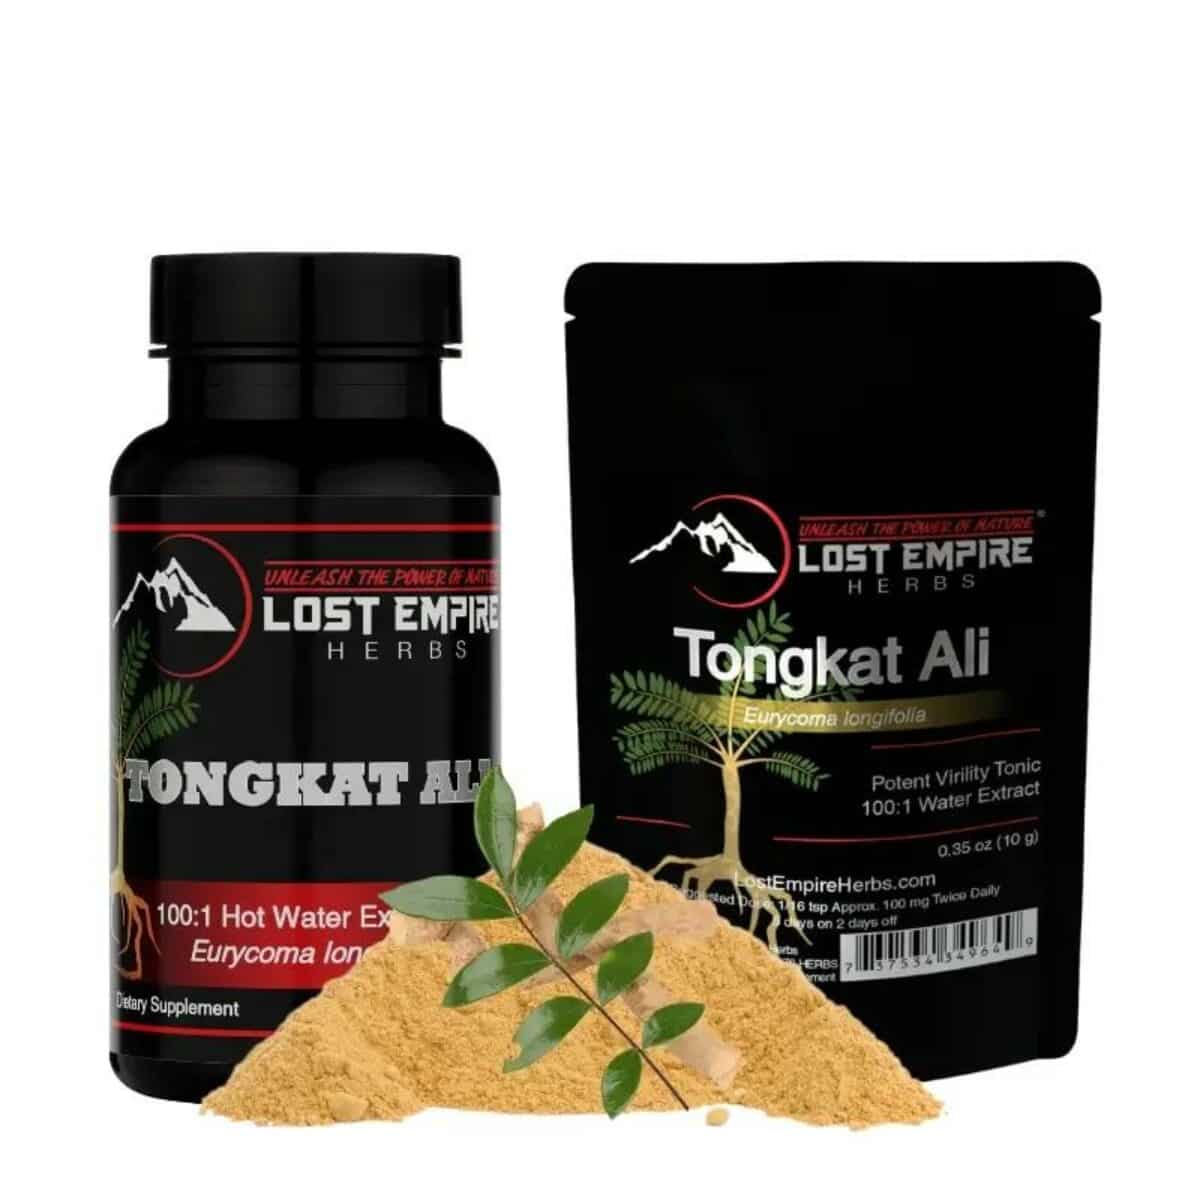 Tongkat Ali Express Raw Powder, Amazing Herbs